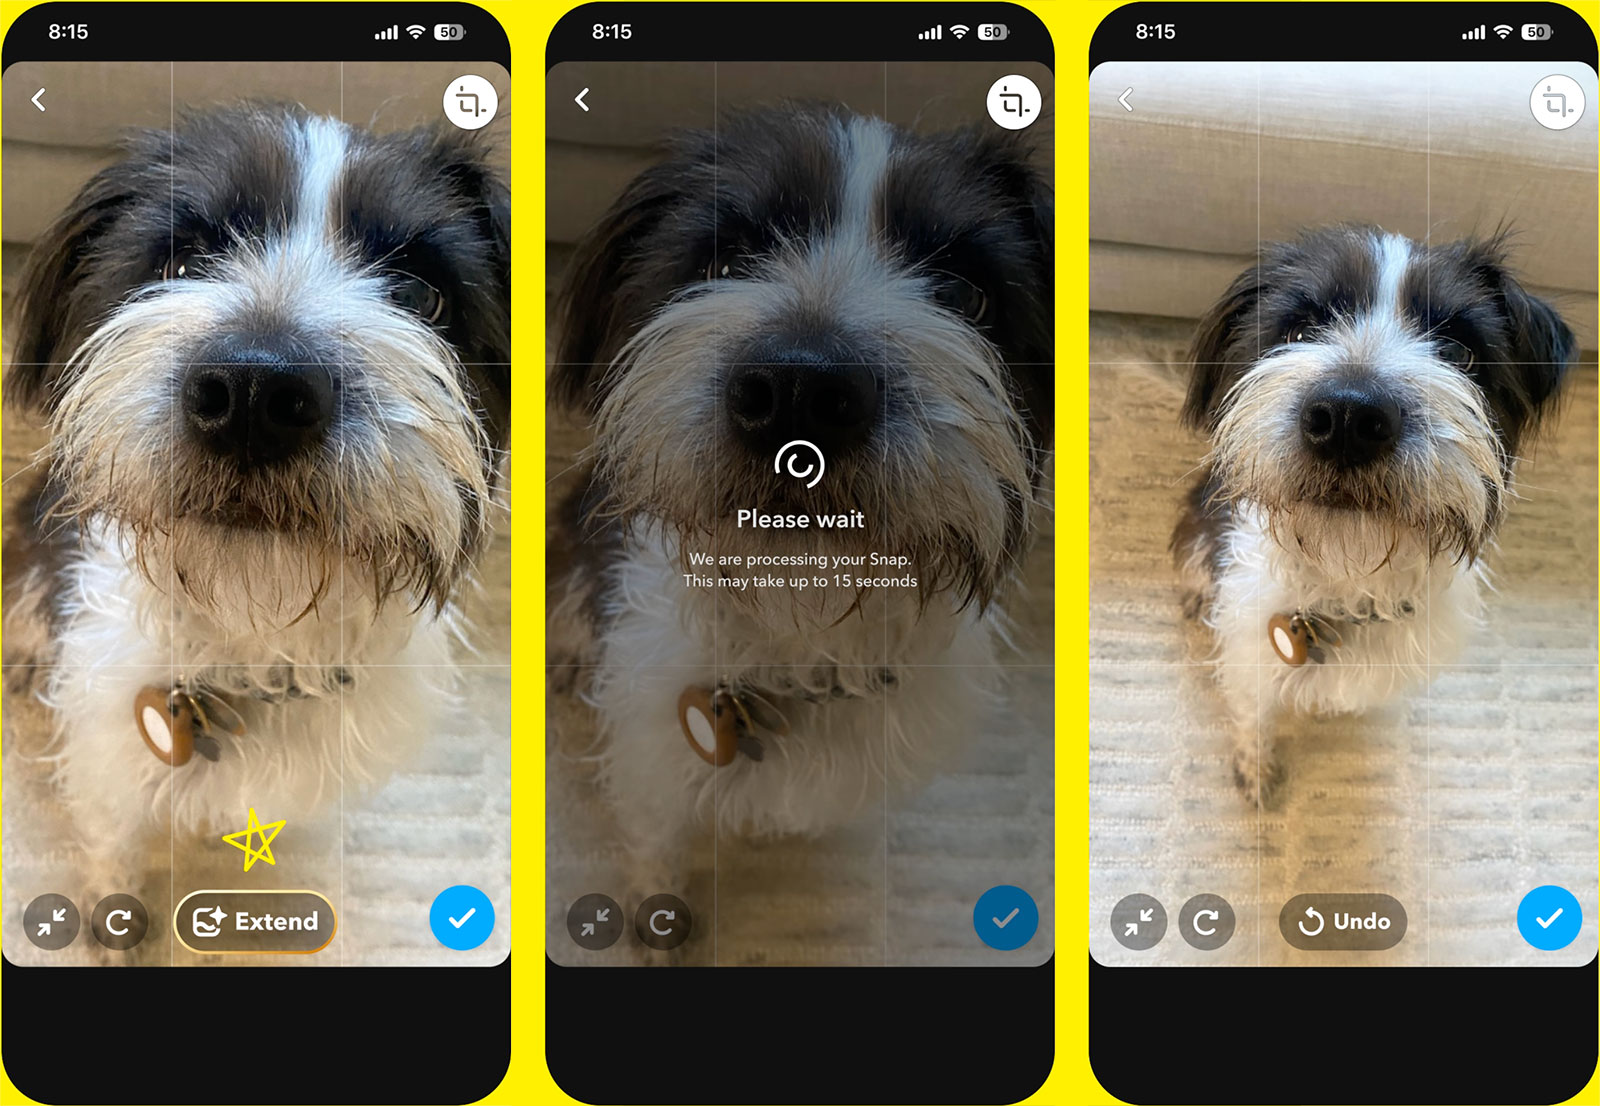 Snapchat+-abonnenter kan nå bruke AI til å opprette eller utvide bilder i appen.